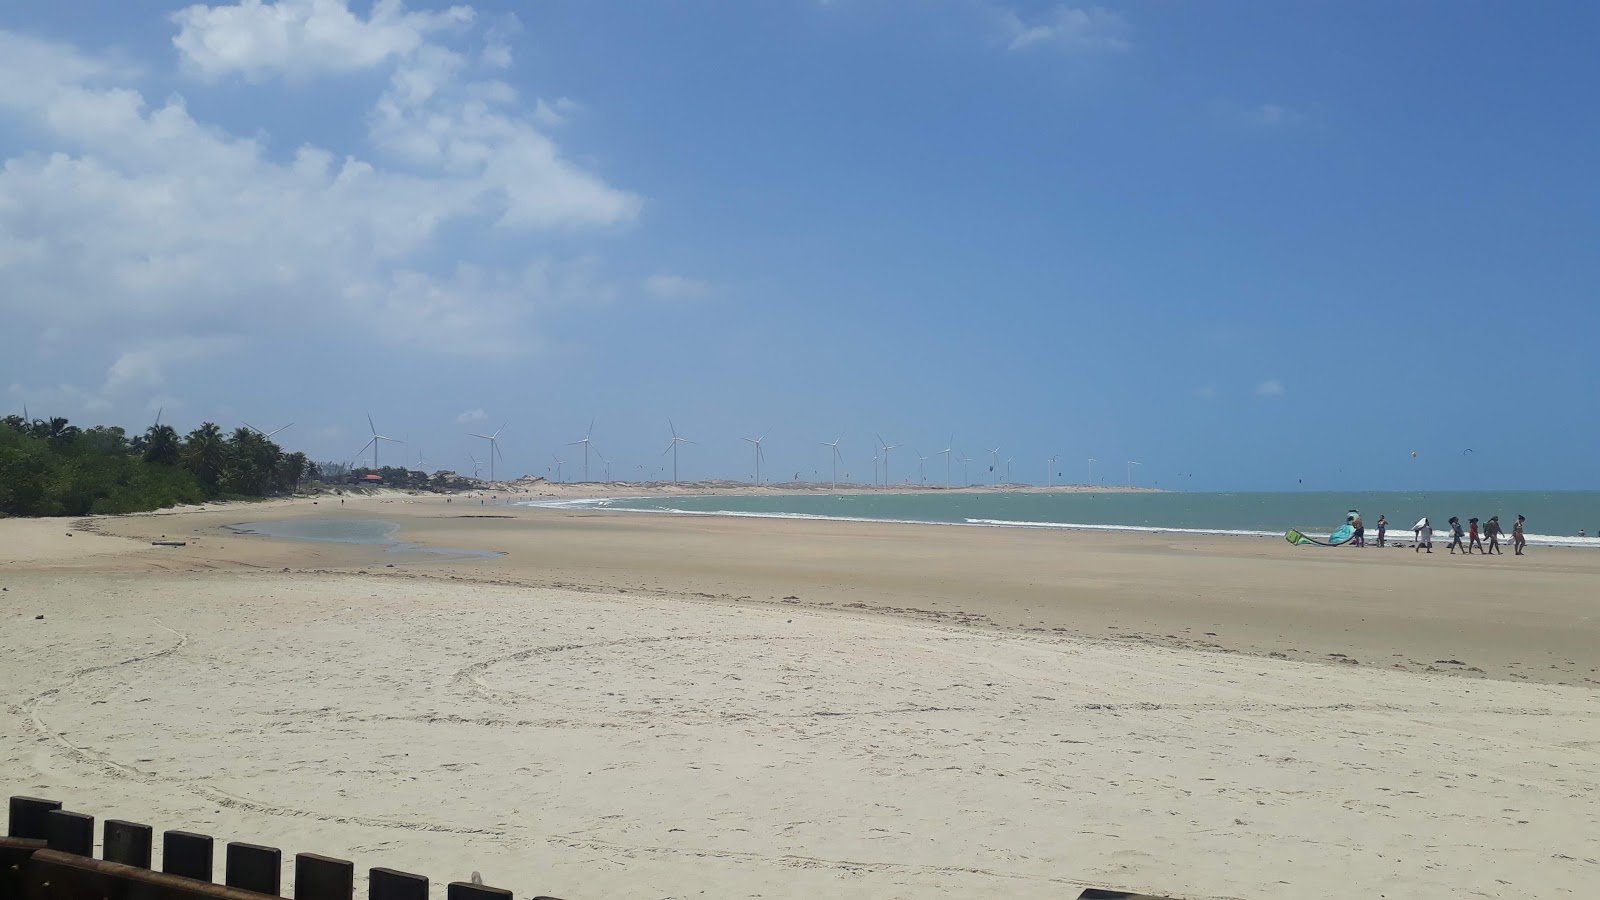 Praia de Amontada'in fotoğrafı geniş plaj ile birlikte